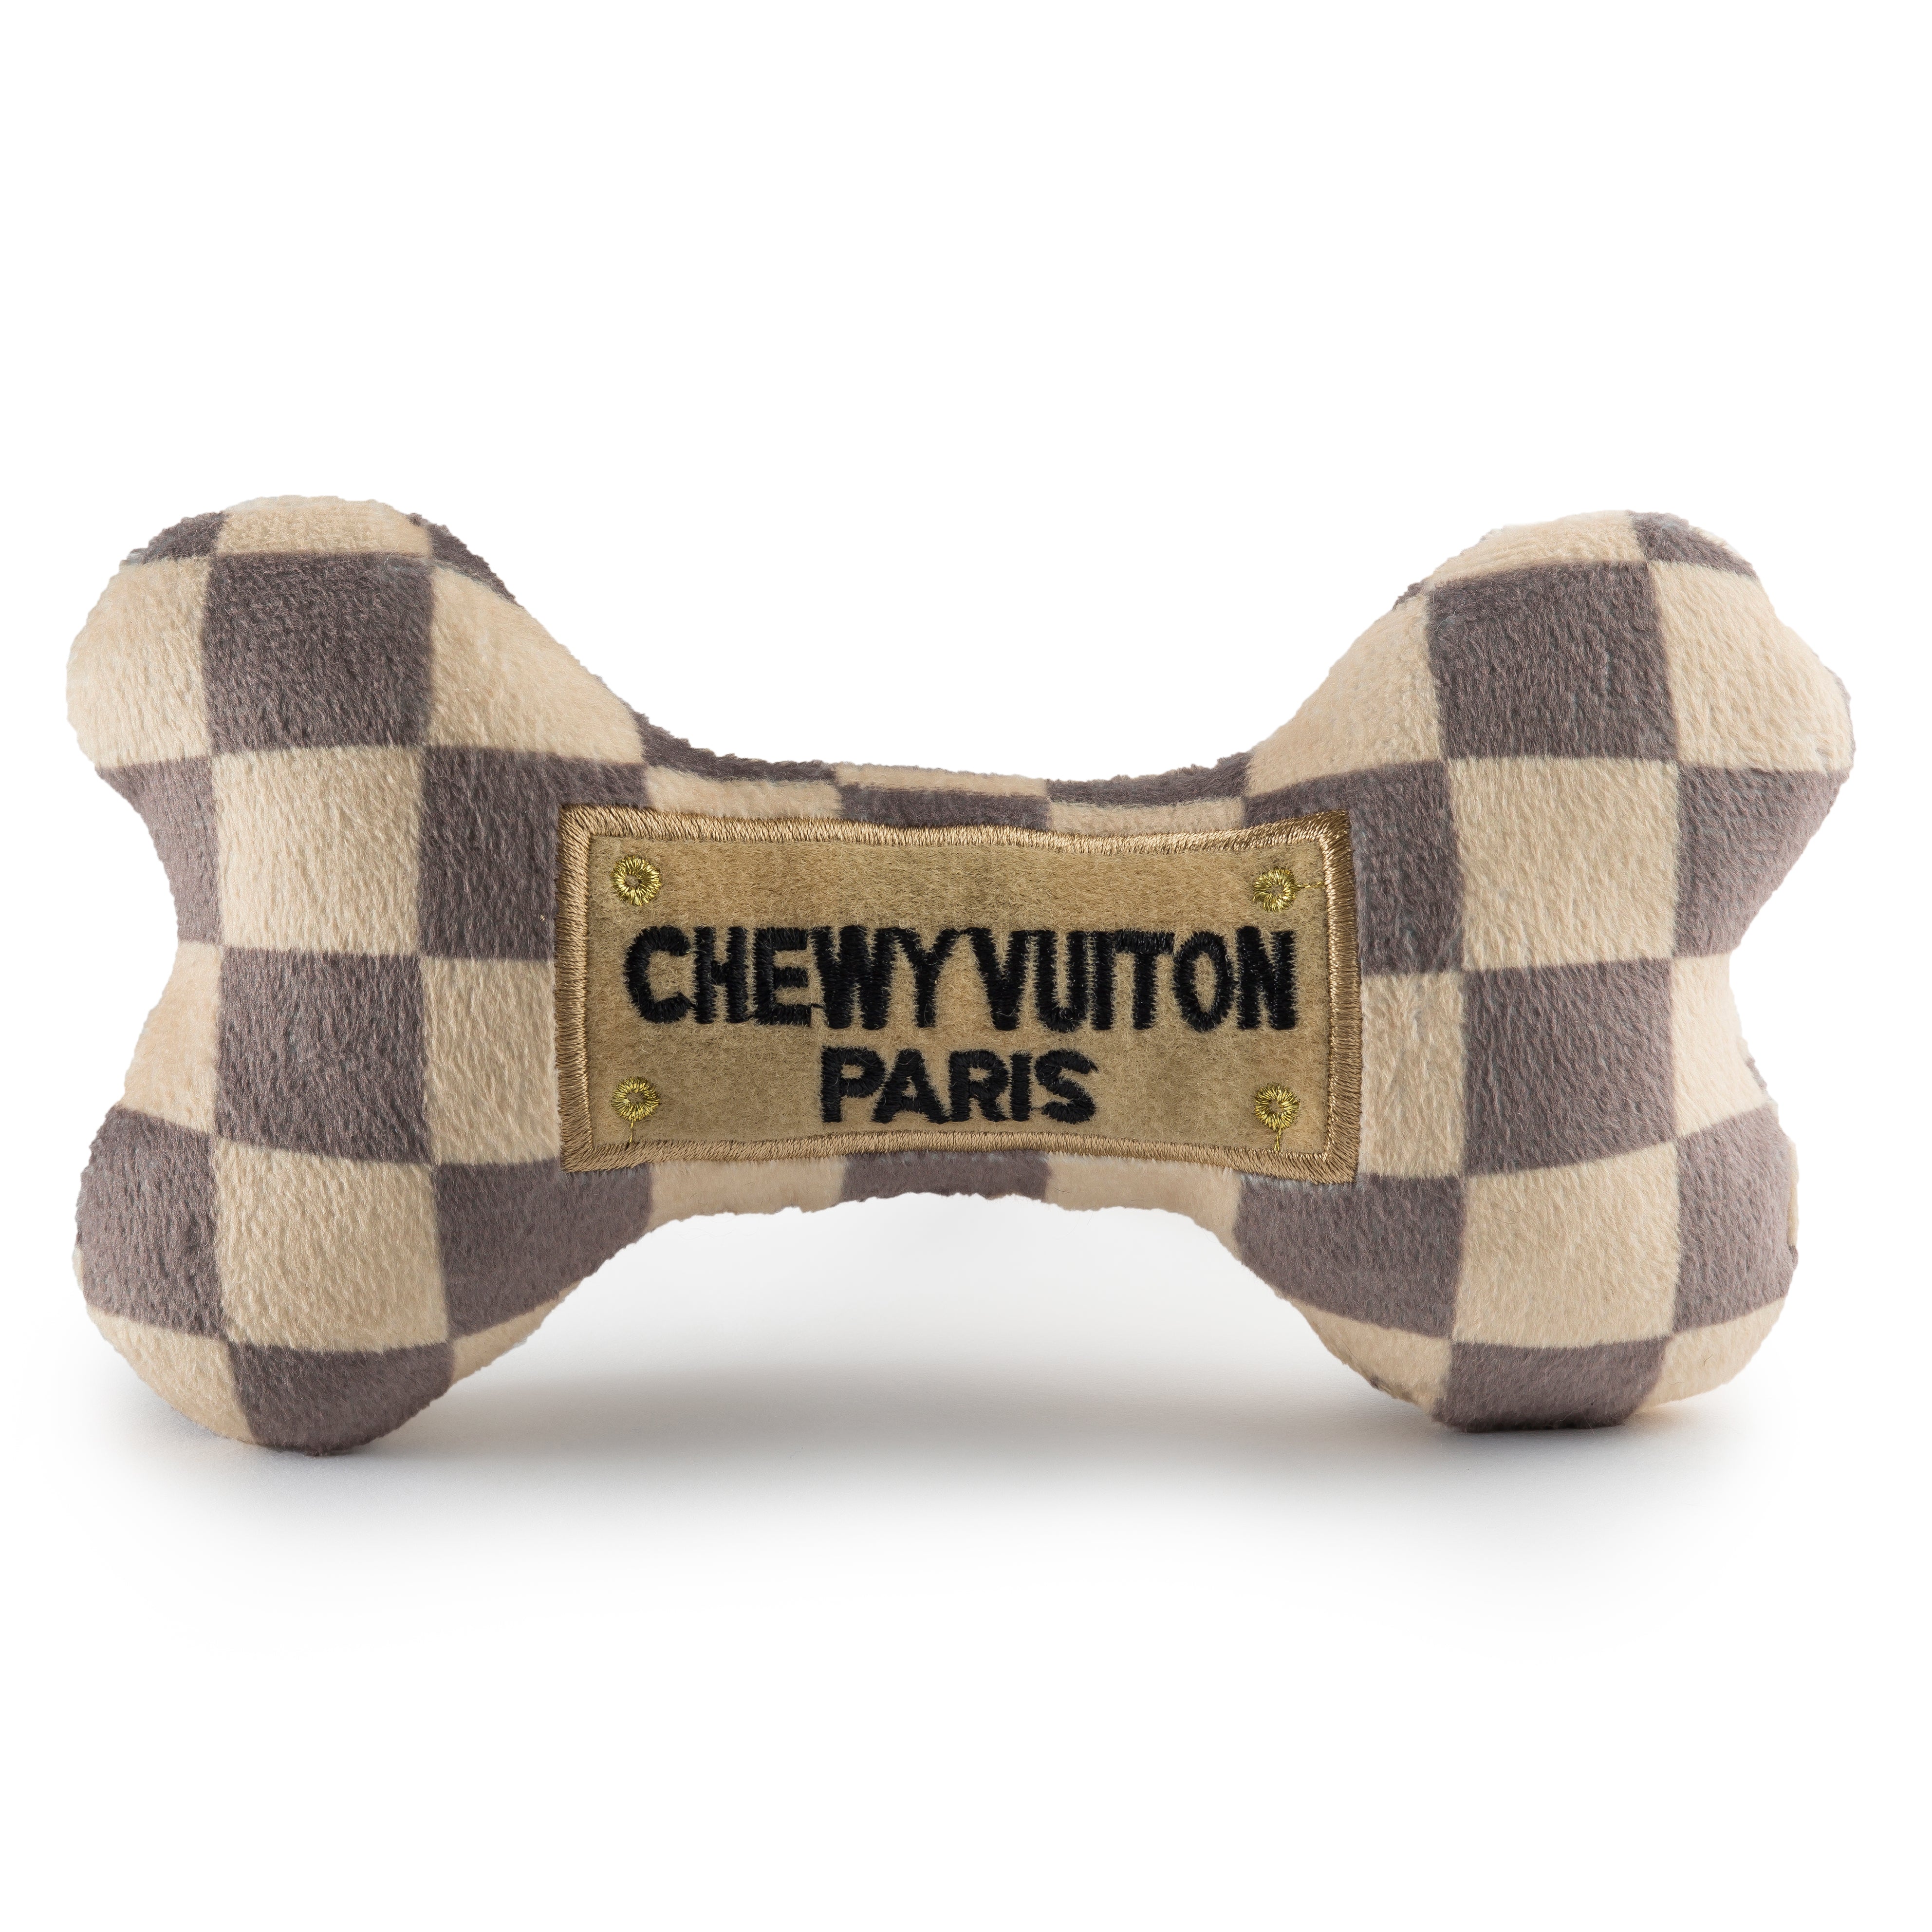 Parody Chewy Vuiton Plush Dog Toys